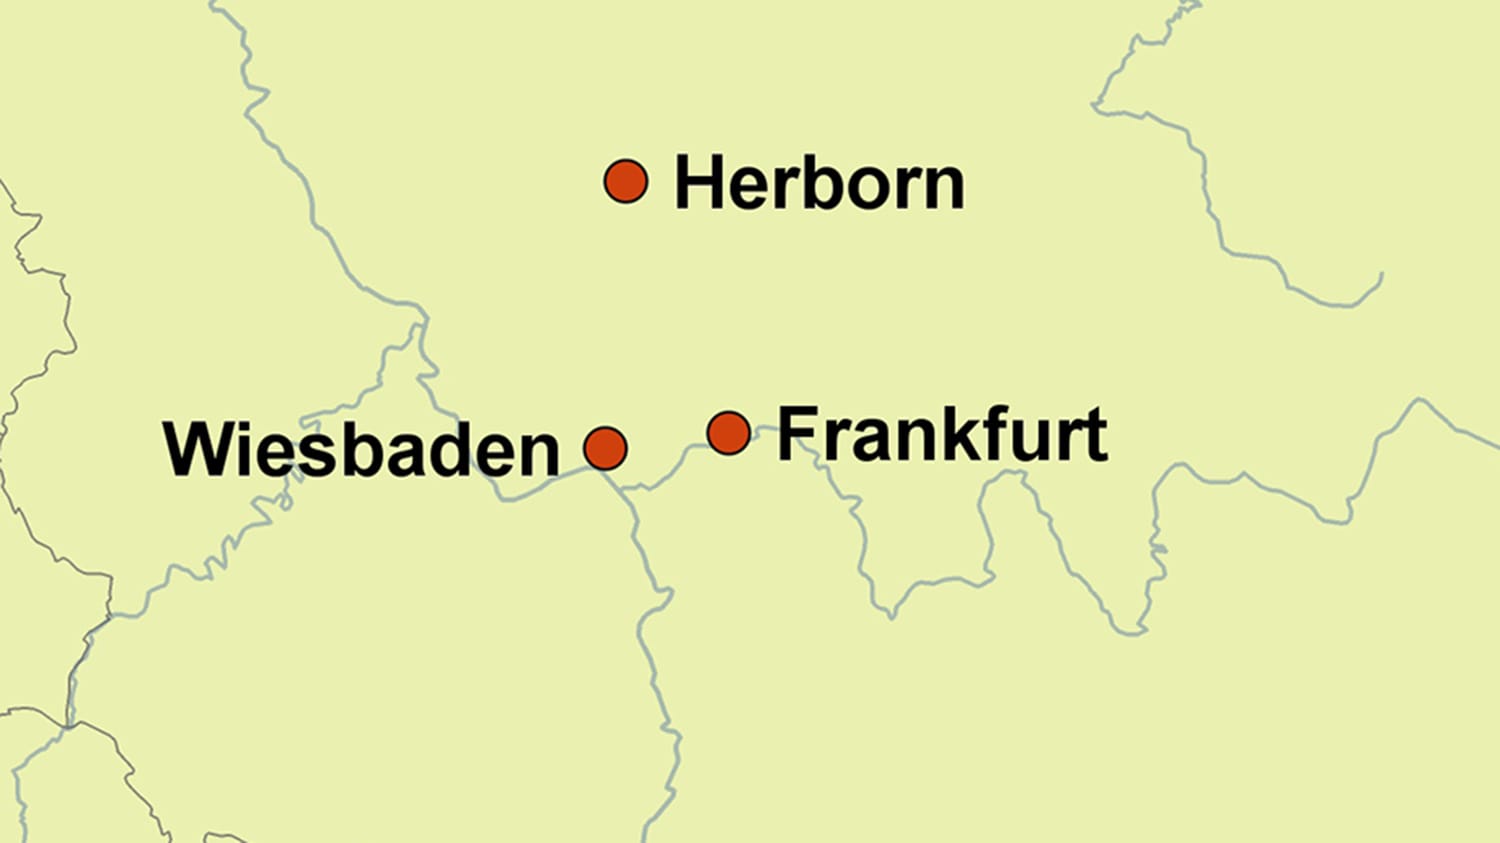 Herborn liegt im Lahn-Dill-Kreis, nördlich von Wiesbaden und Frankfurt. Die Stadt hat rund 20.000 Einwohner.